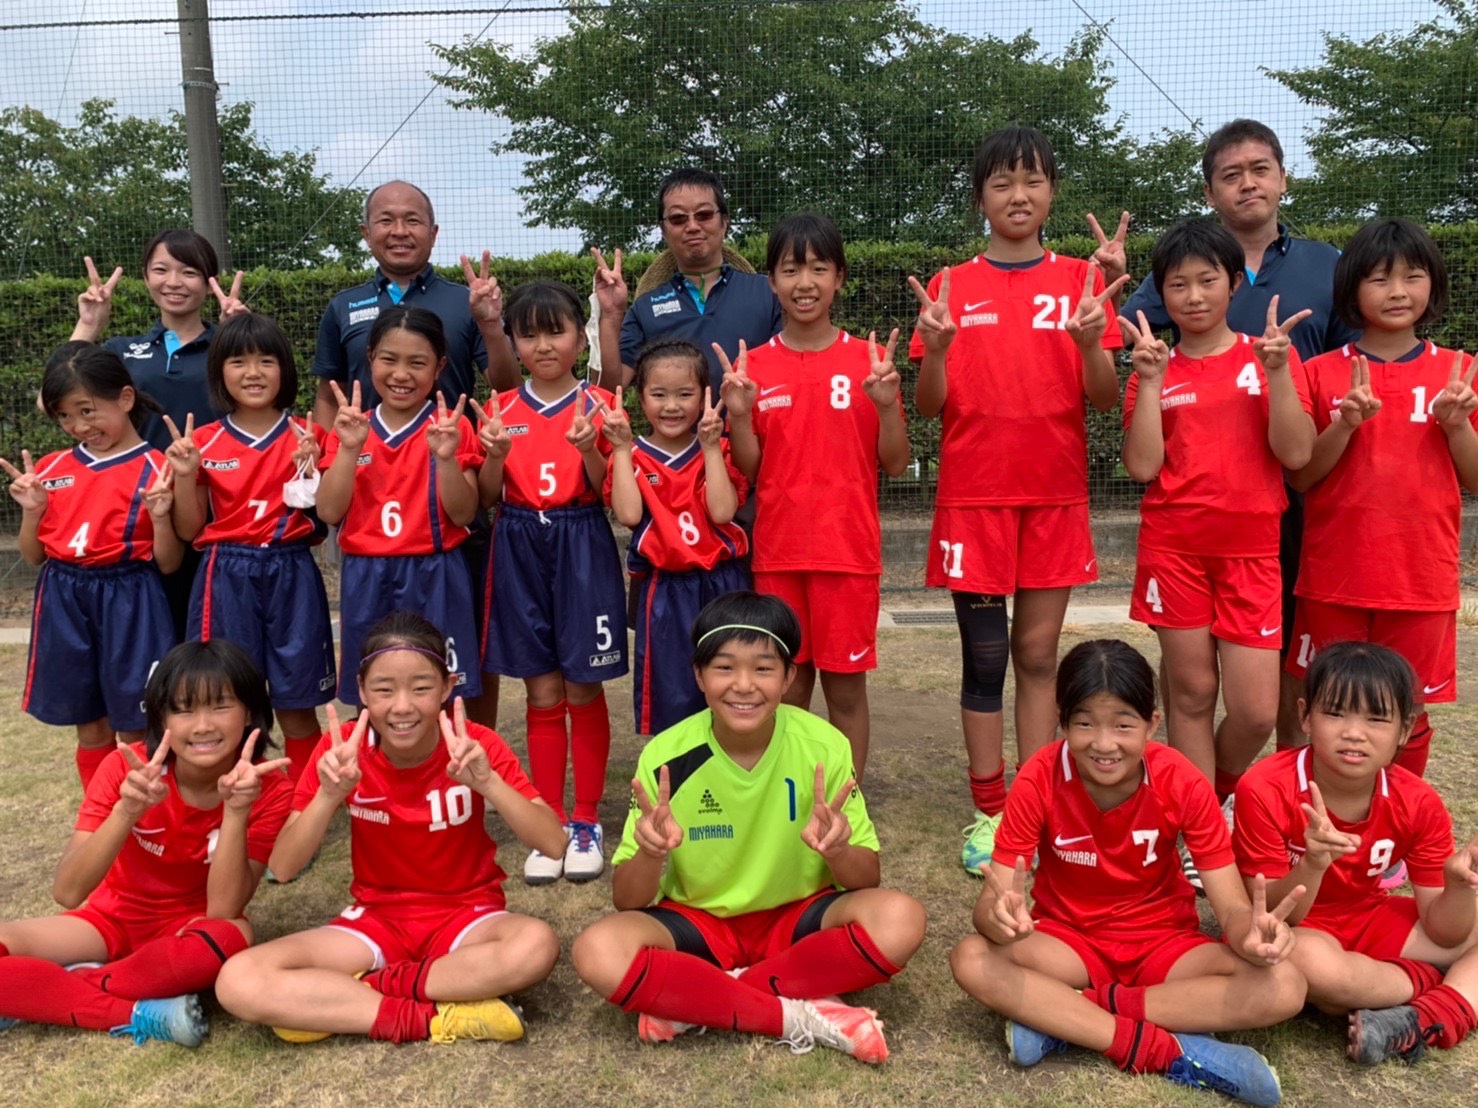 さいたま市 女子 少女 サッカーチーム 宮原サッカースポーツ少年団 宮原サッカーは 女子サッカーチームがあります